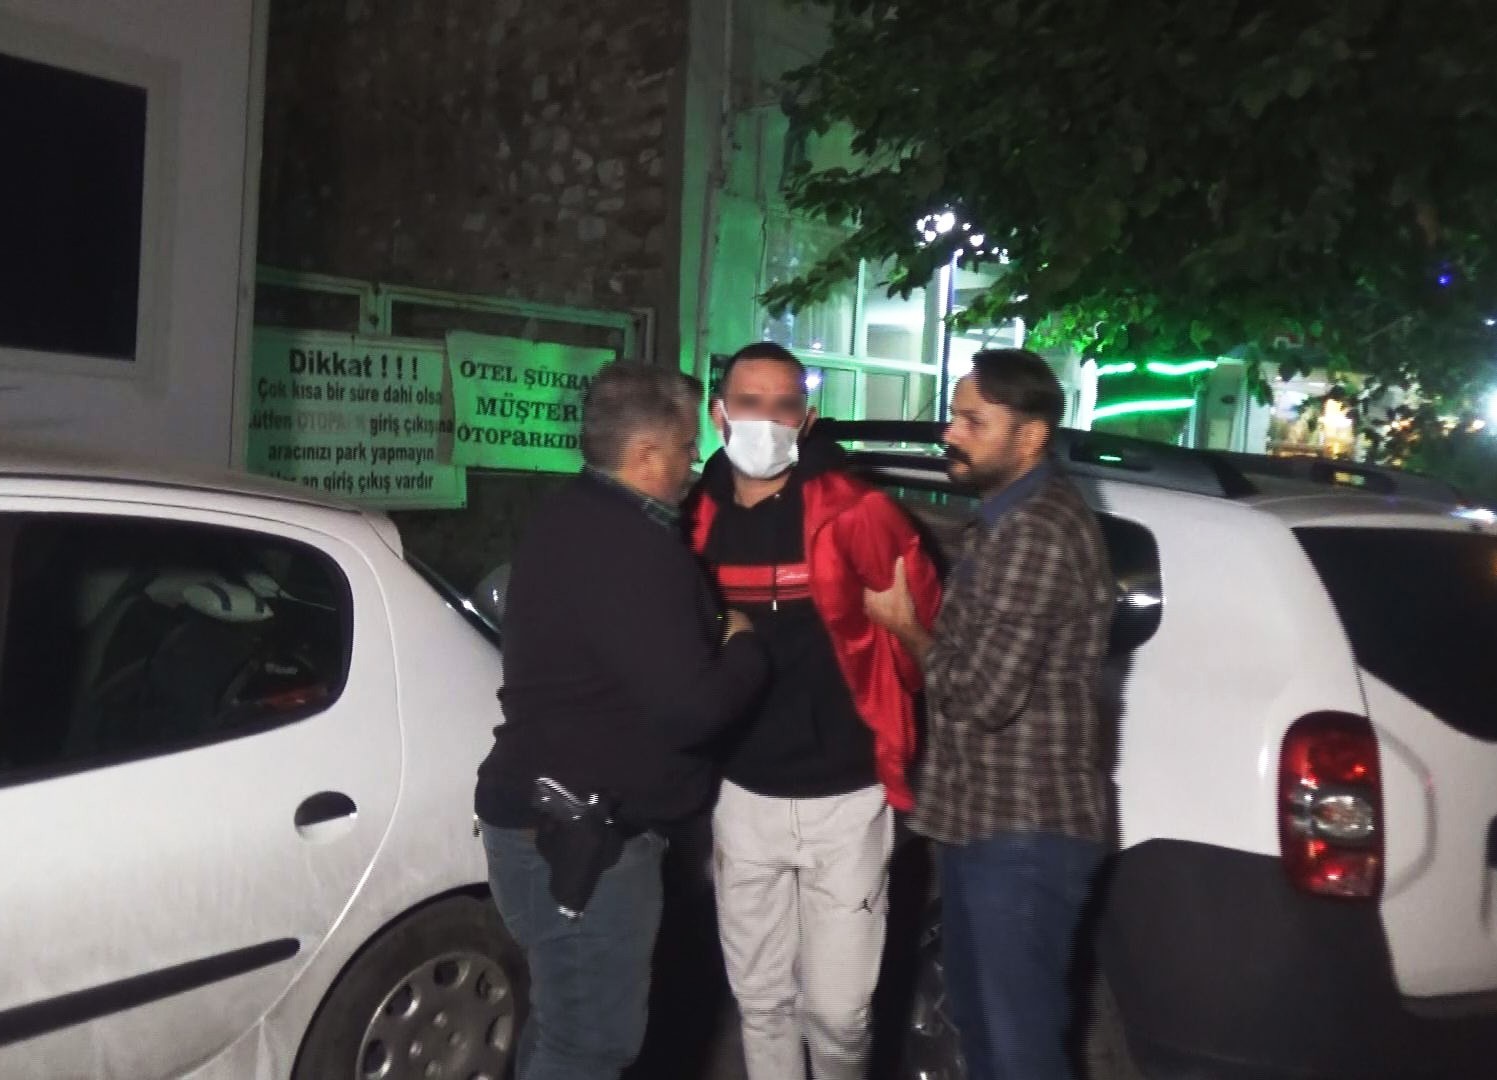 İzmir’de bıçaklı kavga: 1 ağır yaralı #izmir